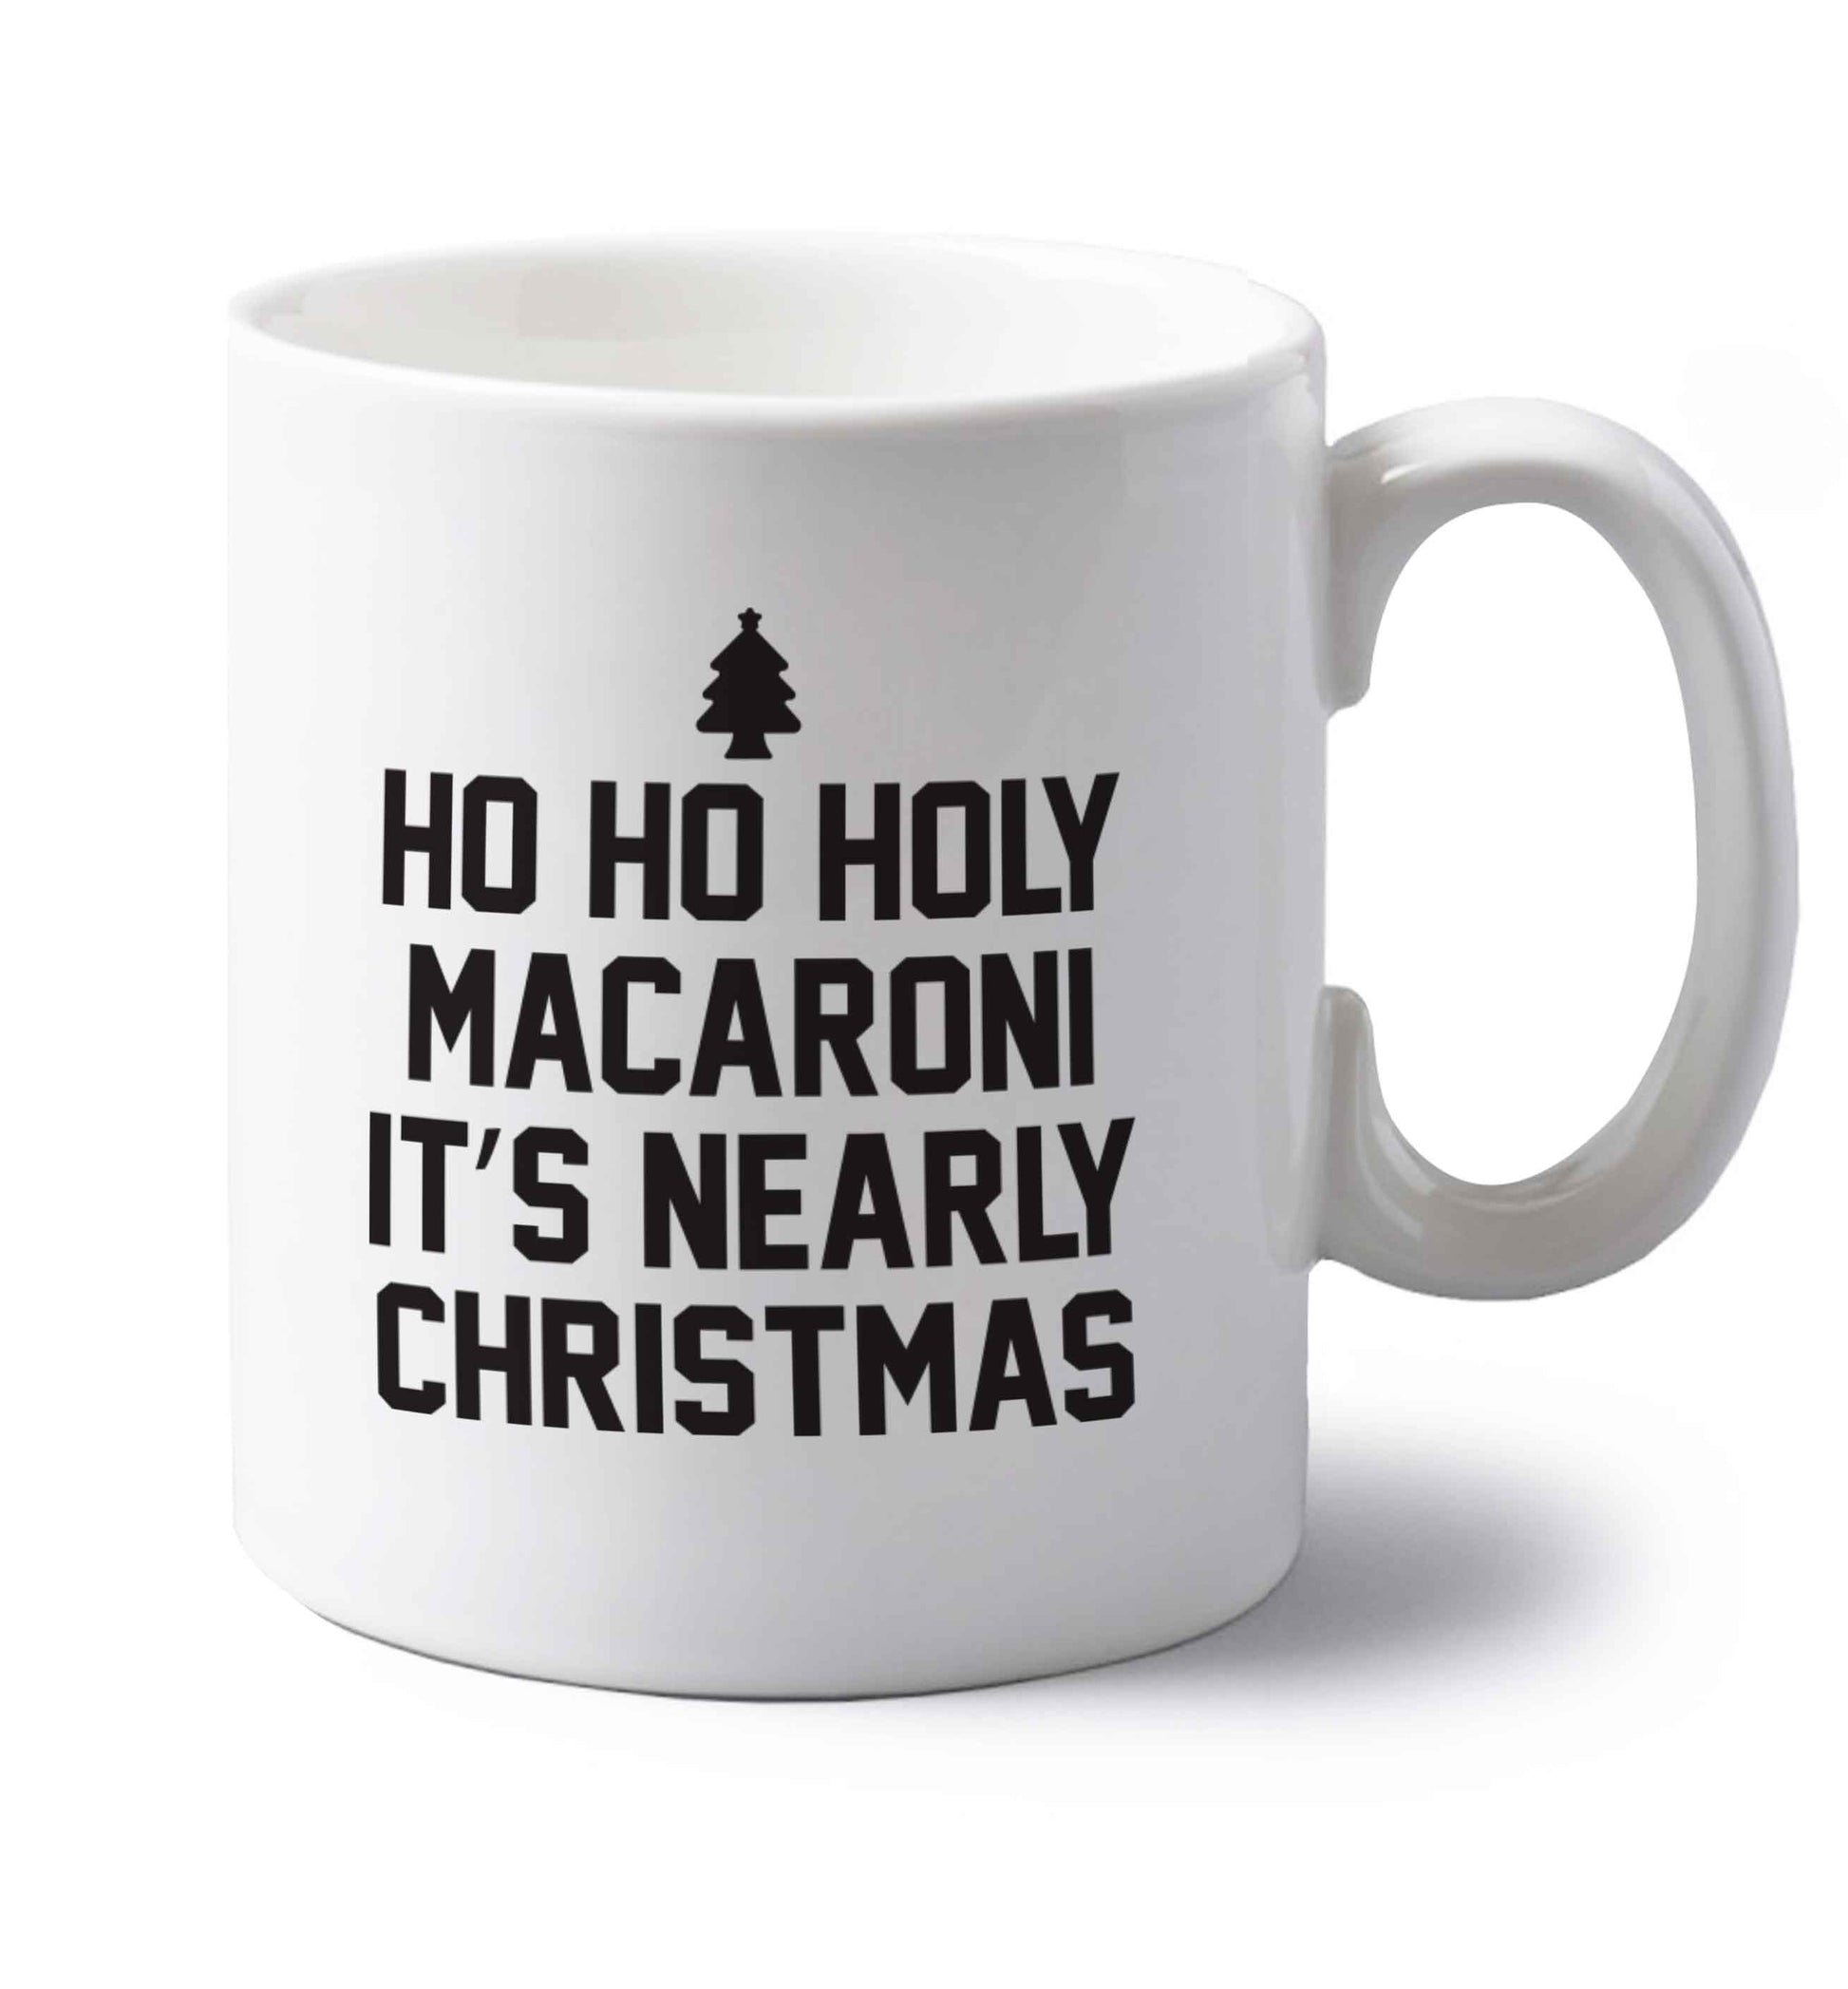 Ho ho holy macaroni it's nearly Christmas left handed white ceramic mug 